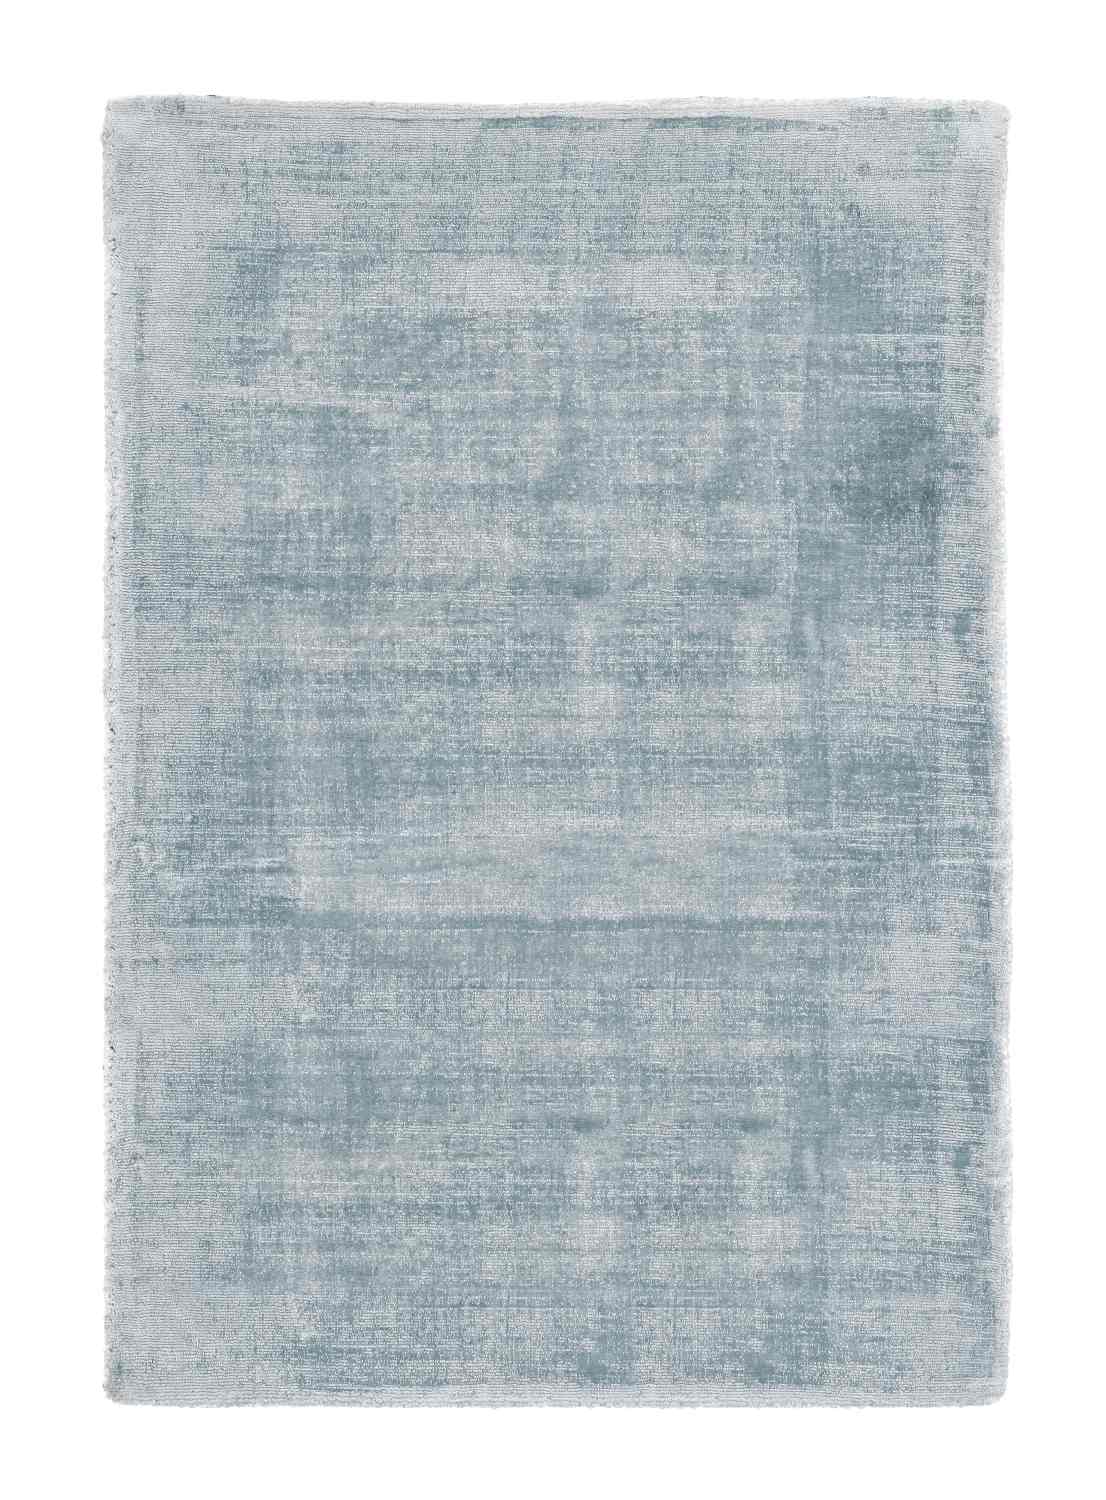 Der Teppich Rashmi überzeugt mit seinem modernen Design. Gefertigt wurde die Vorderseite aus Viskose und die Rückseite aus Baumwolle. Der Teppich besitzt eine hellblauen Farbton und die Maße von 140x200 cm.